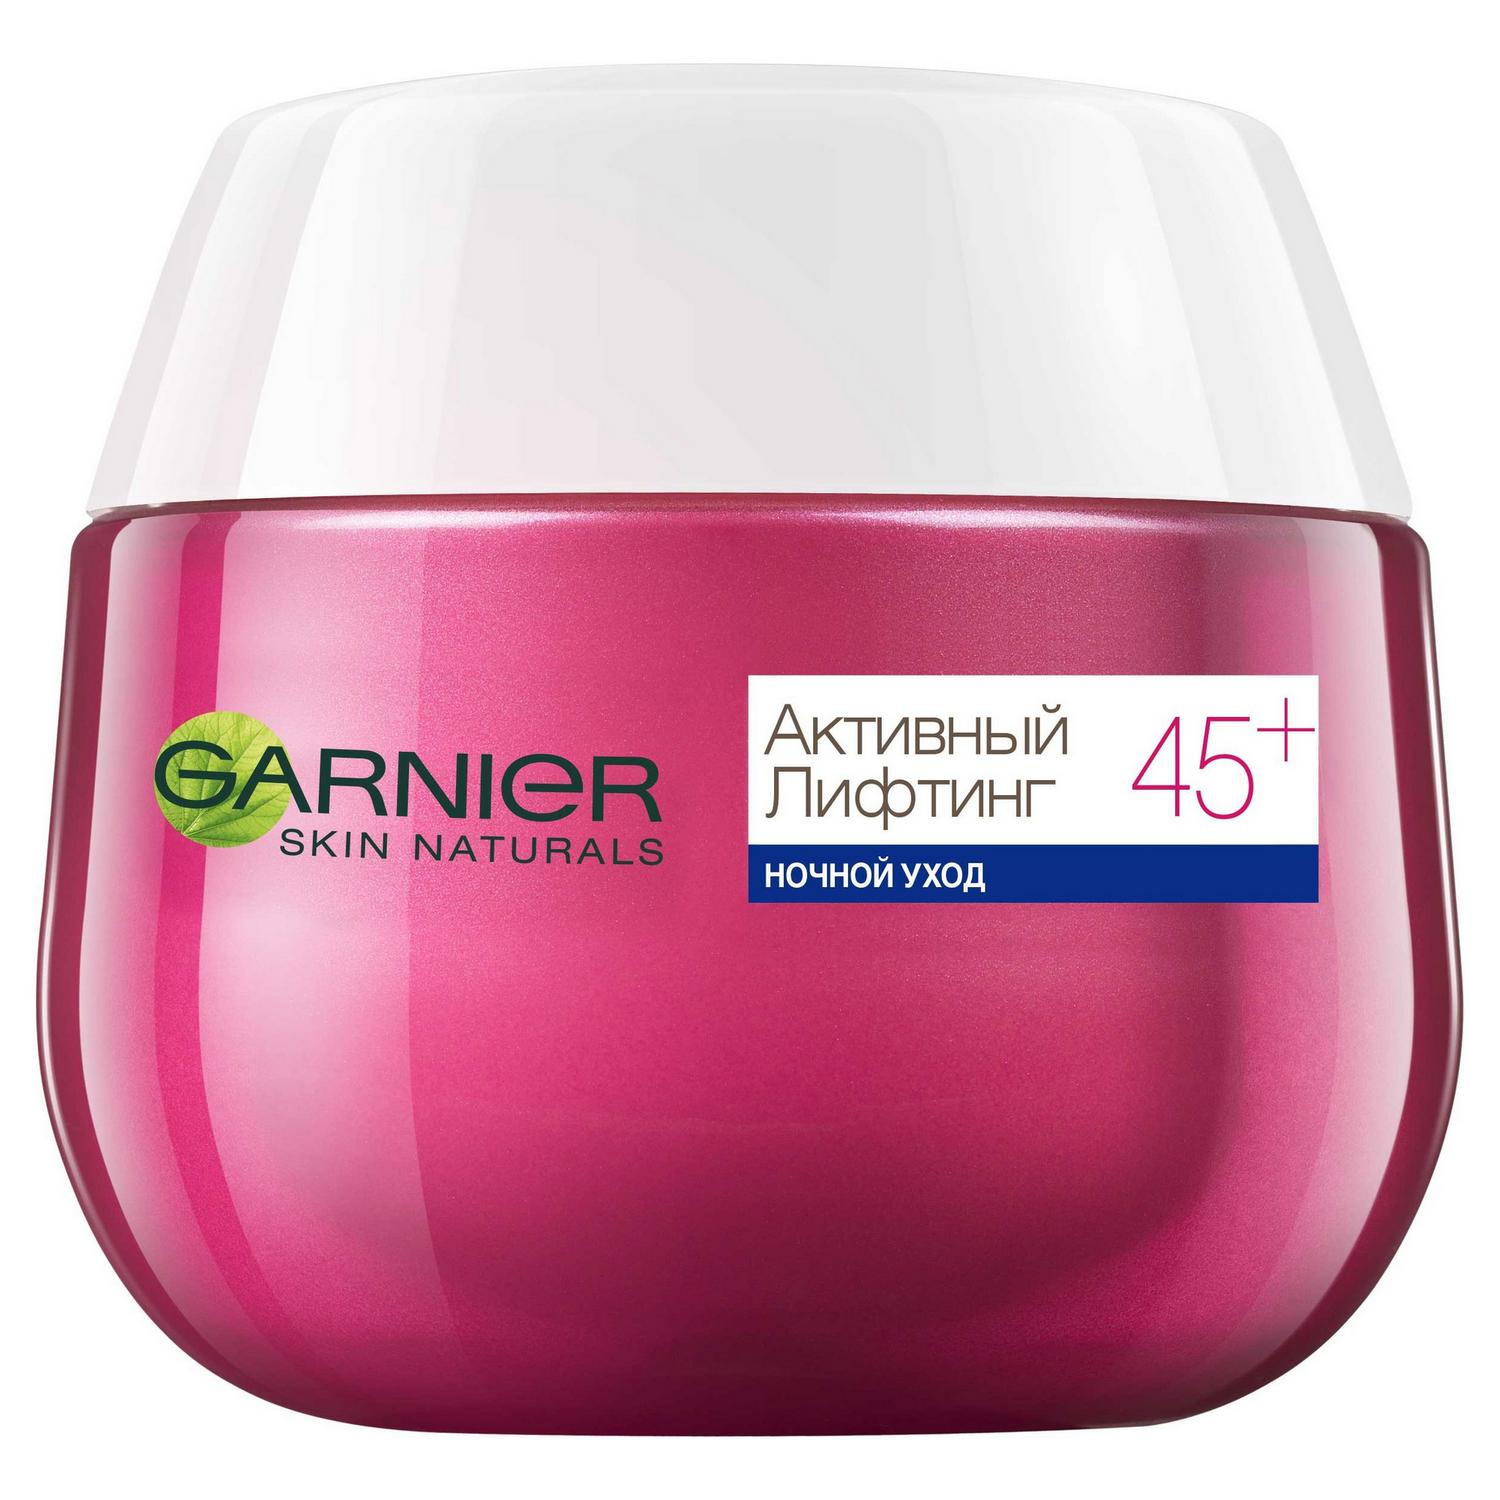 Крем для лица Garnier Skin Naturals Активный лифтинг 45+ ночной уход 50 мл, размер 8x6,6x6,6 см C4933800/6 - фото 4